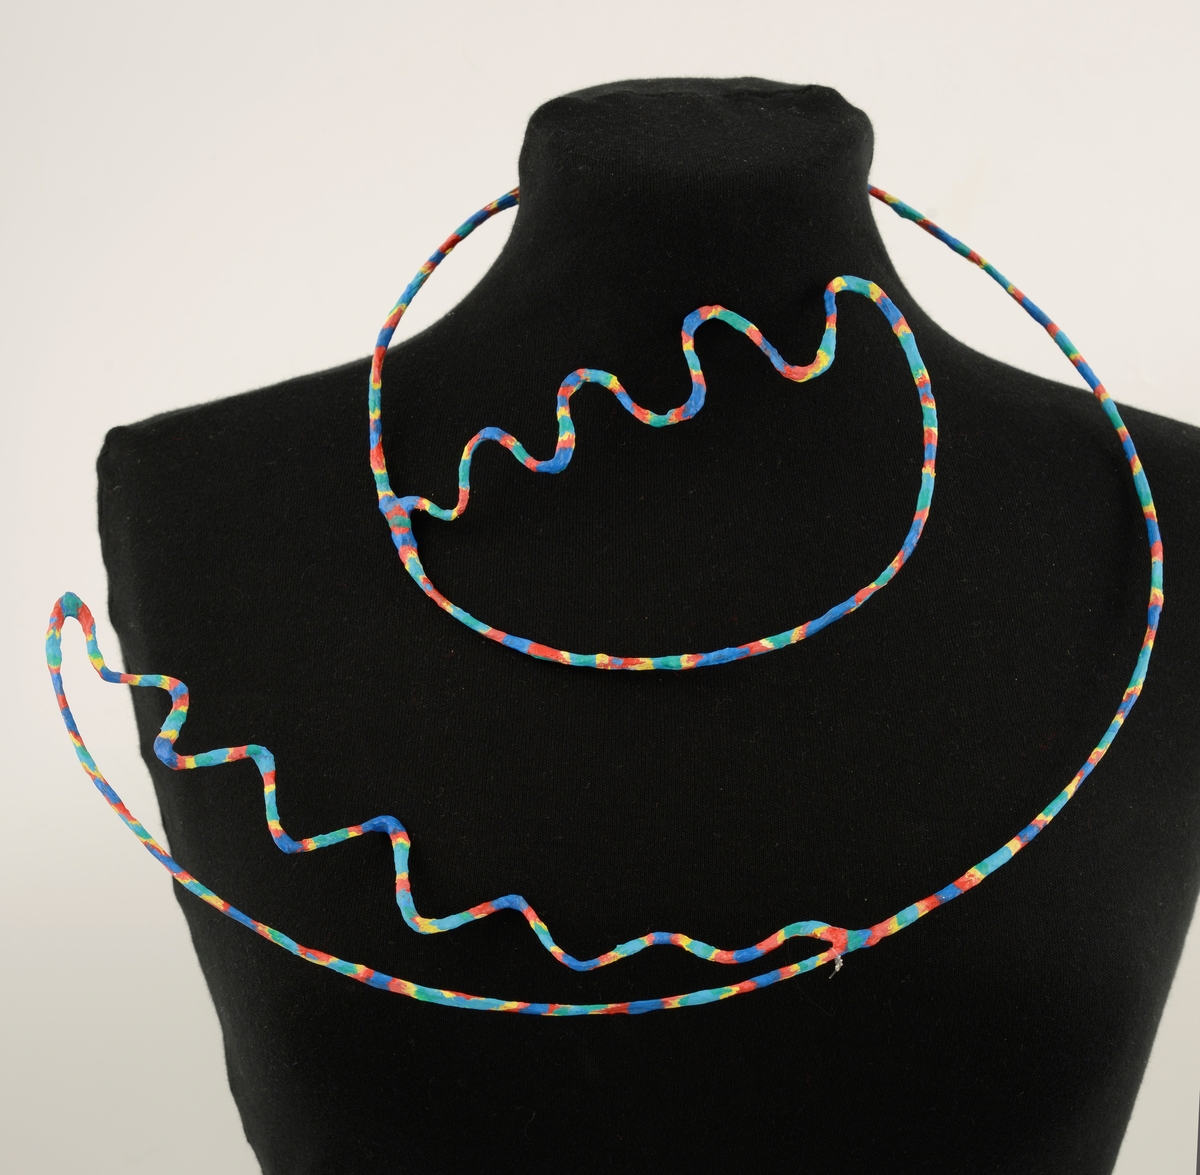 Halssmykke laget av metalltråd som er dekket med papir malt med akrylfarge i forskjellige farger; rød, blå, gul og grønn. Smykket er formet som en åpen spiral som ender i siksakk-former ytterst og innerst.